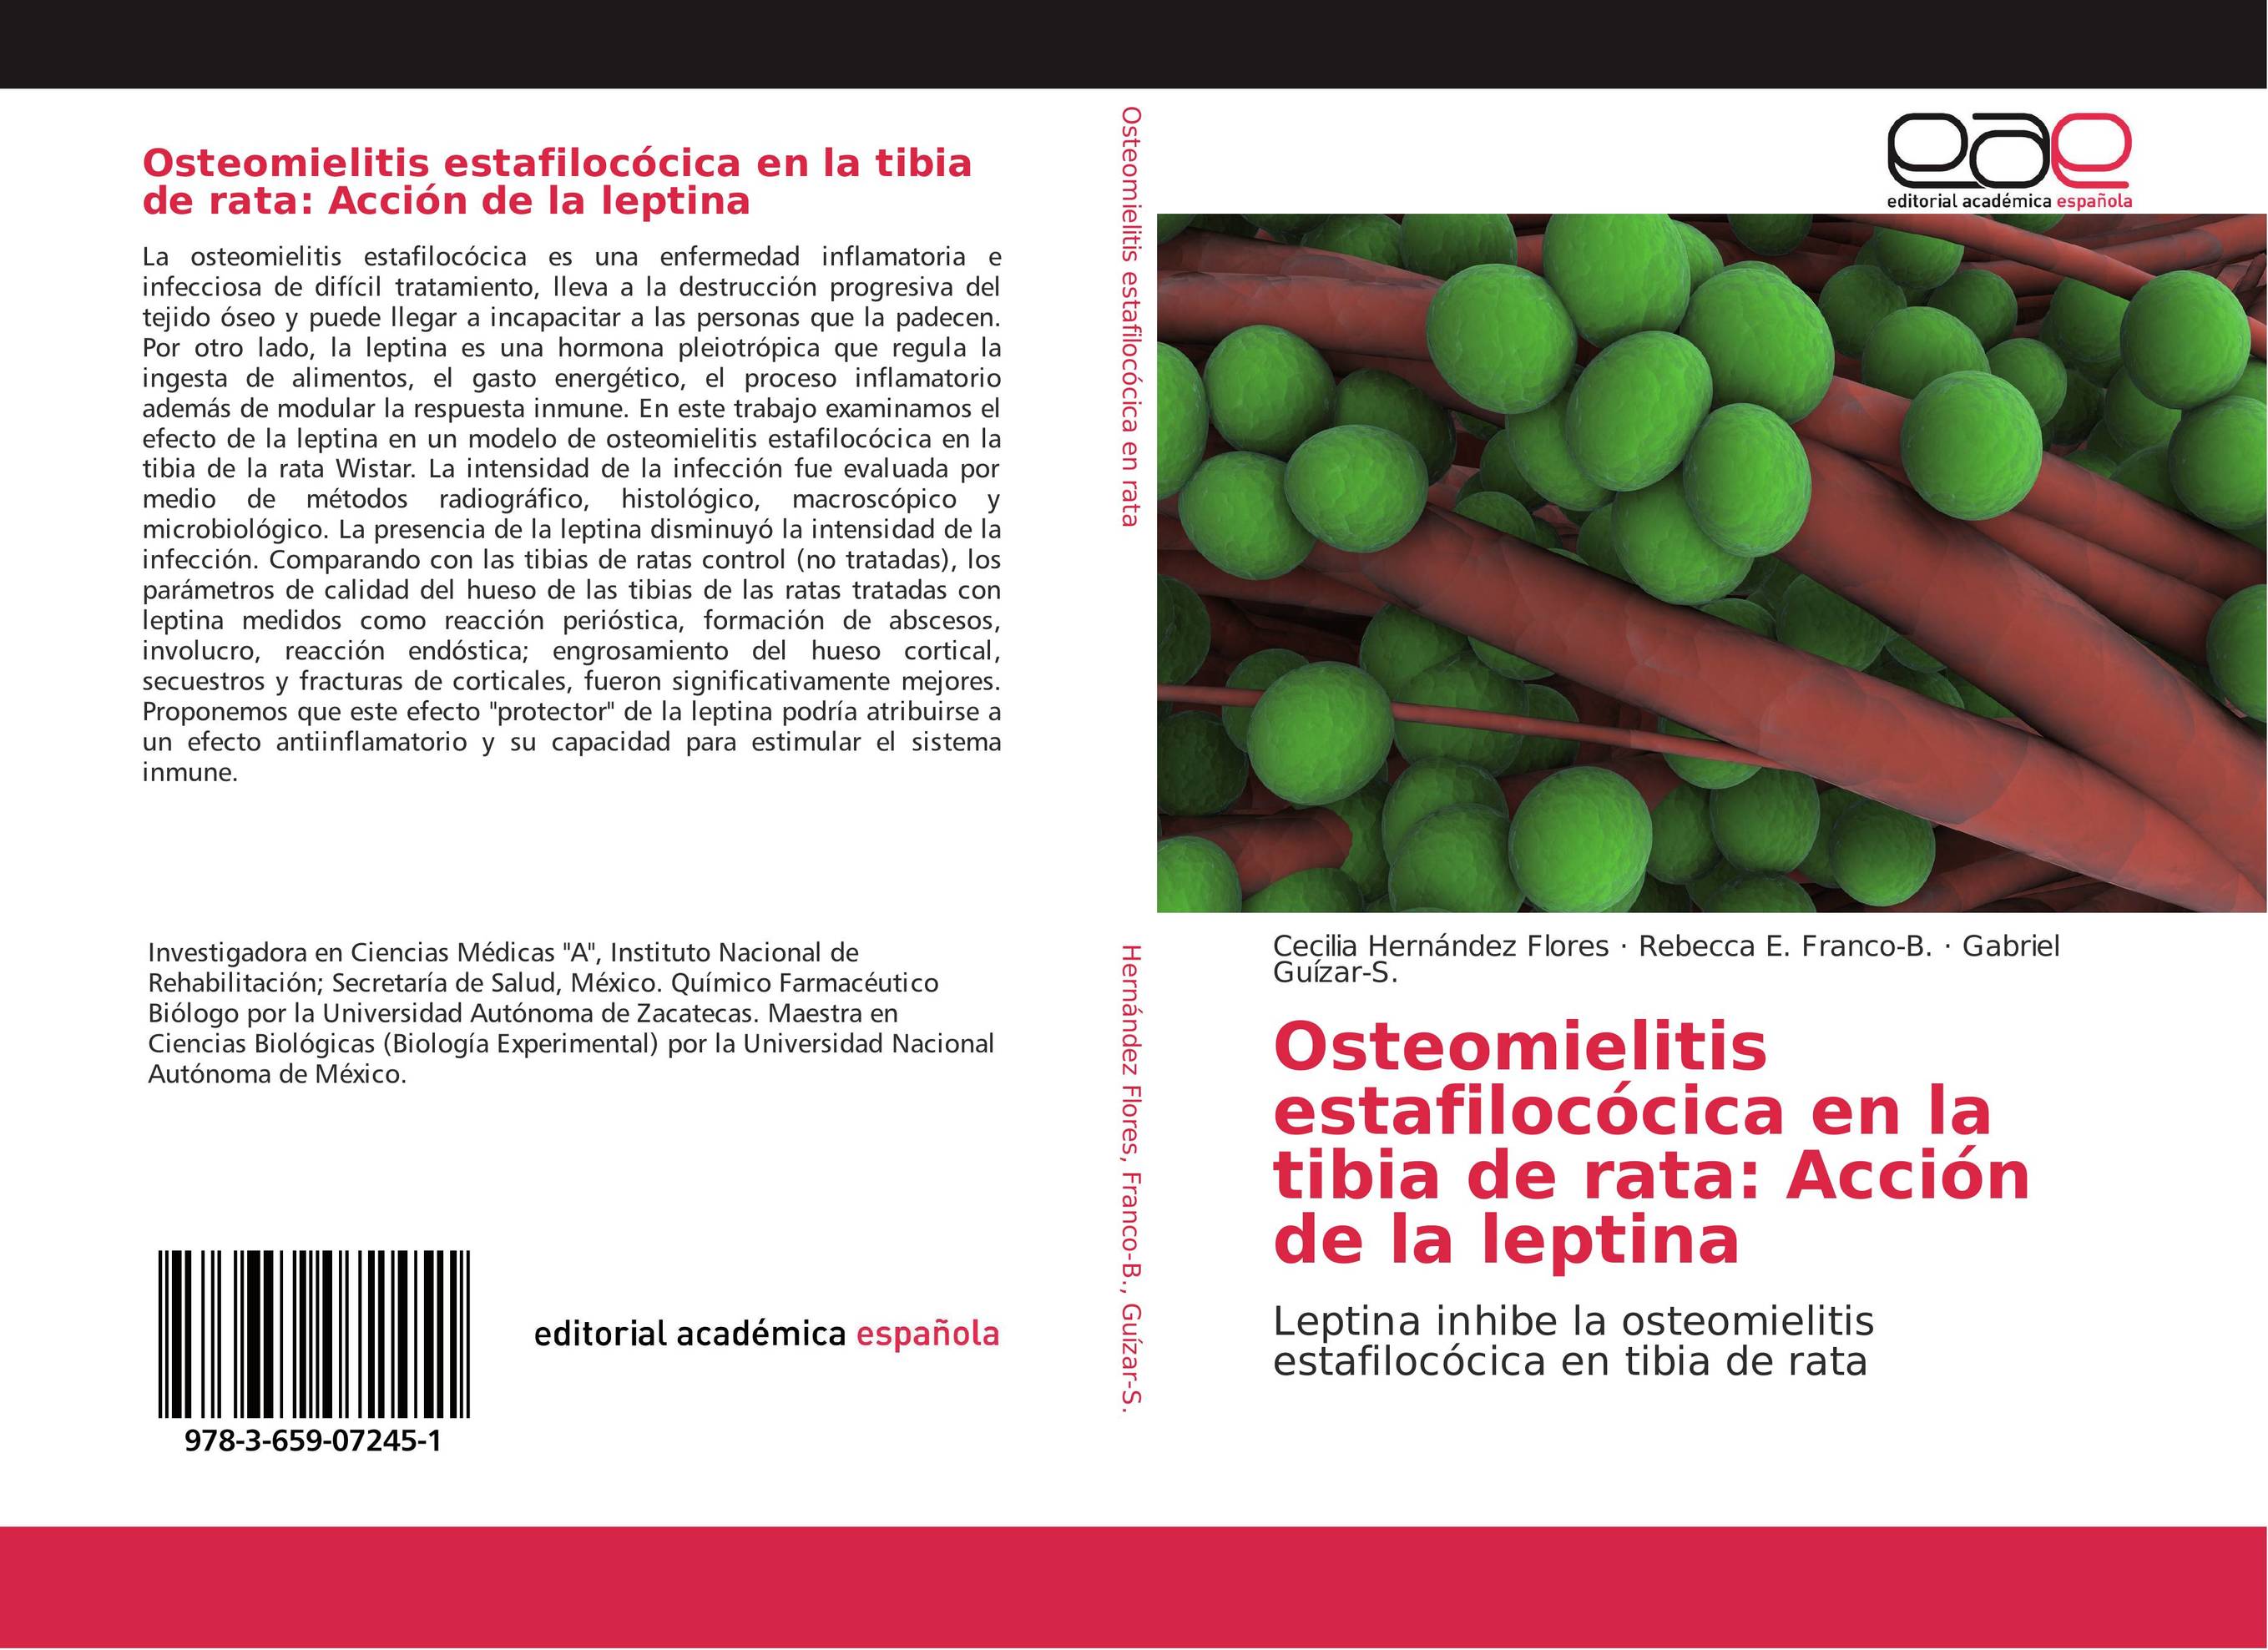 Osteomielitis estafilocócica en la tibia de rata: Acción de la leptina